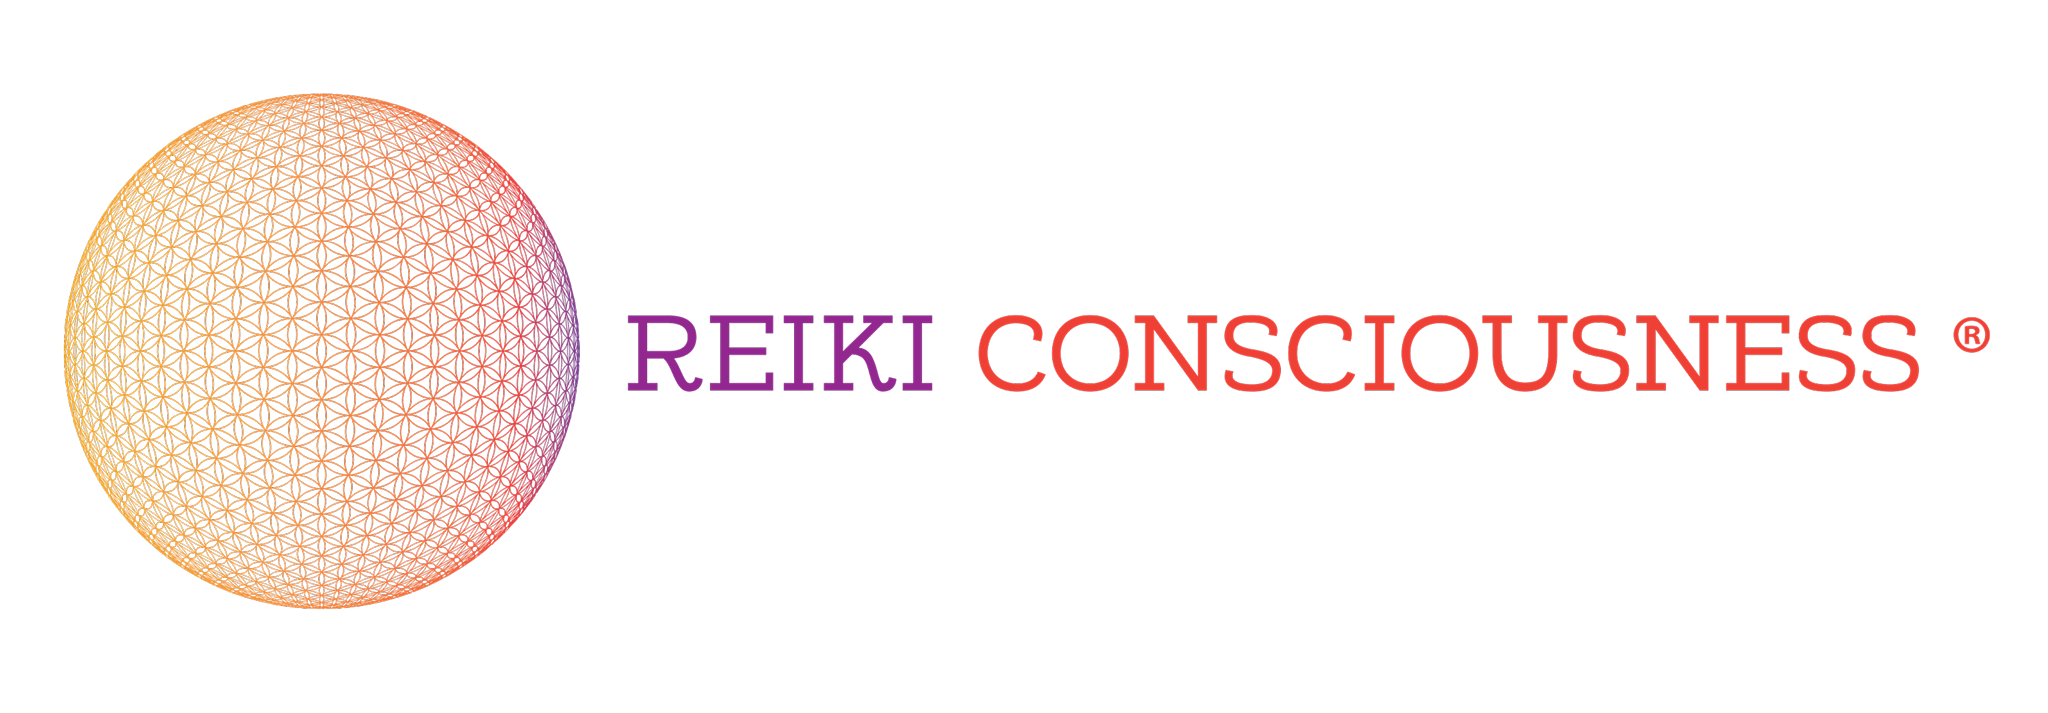 Formation-reiki-consciousness.com